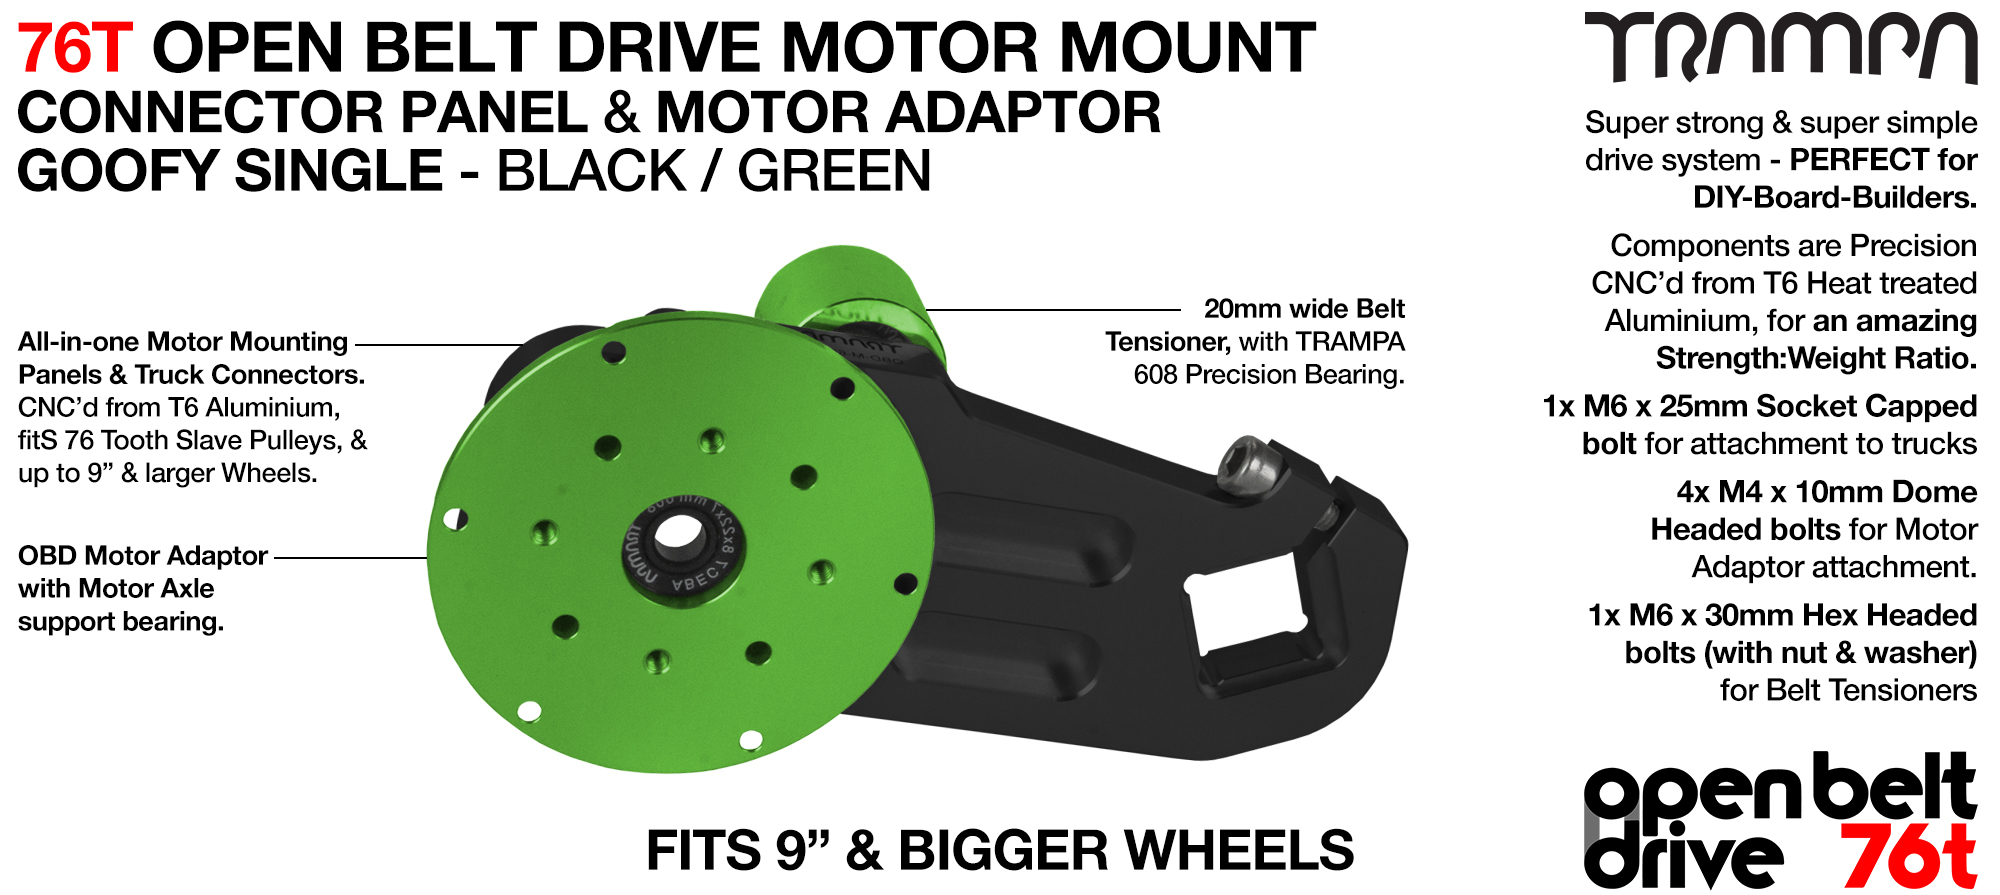 76T Open Belt Drive Motor Mount & Motor Adaptor - SINGLE GREEN